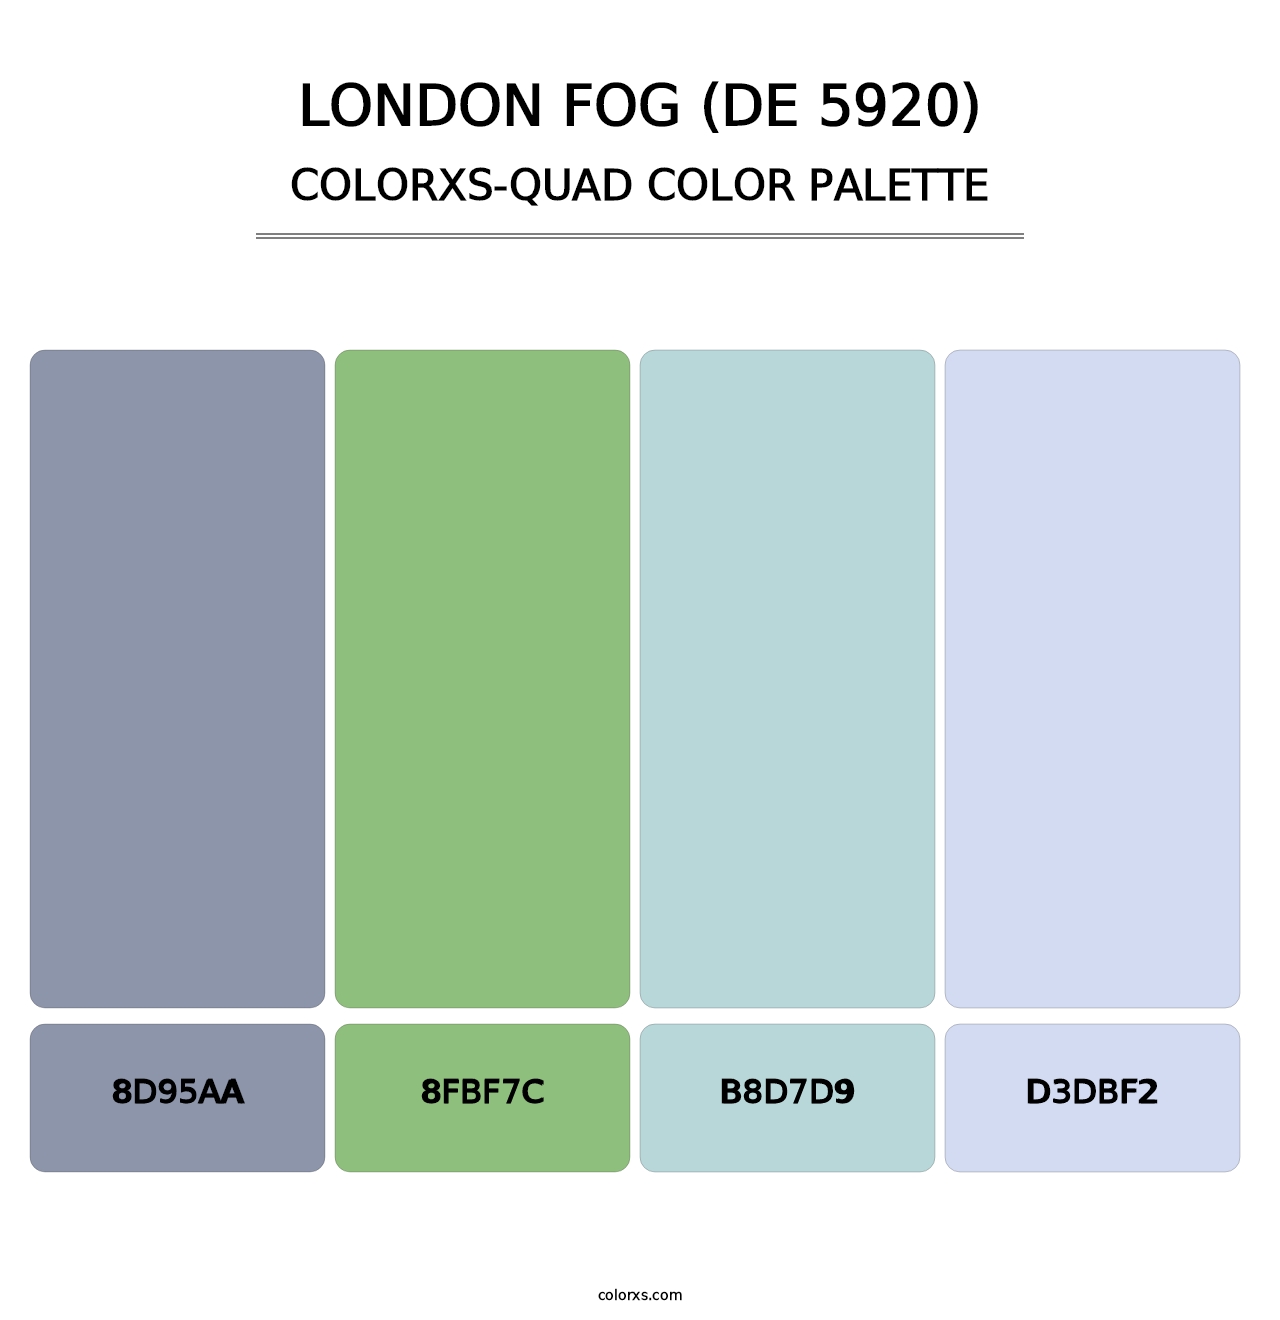 London Fog (DE 5920) - Colorxs Quad Palette